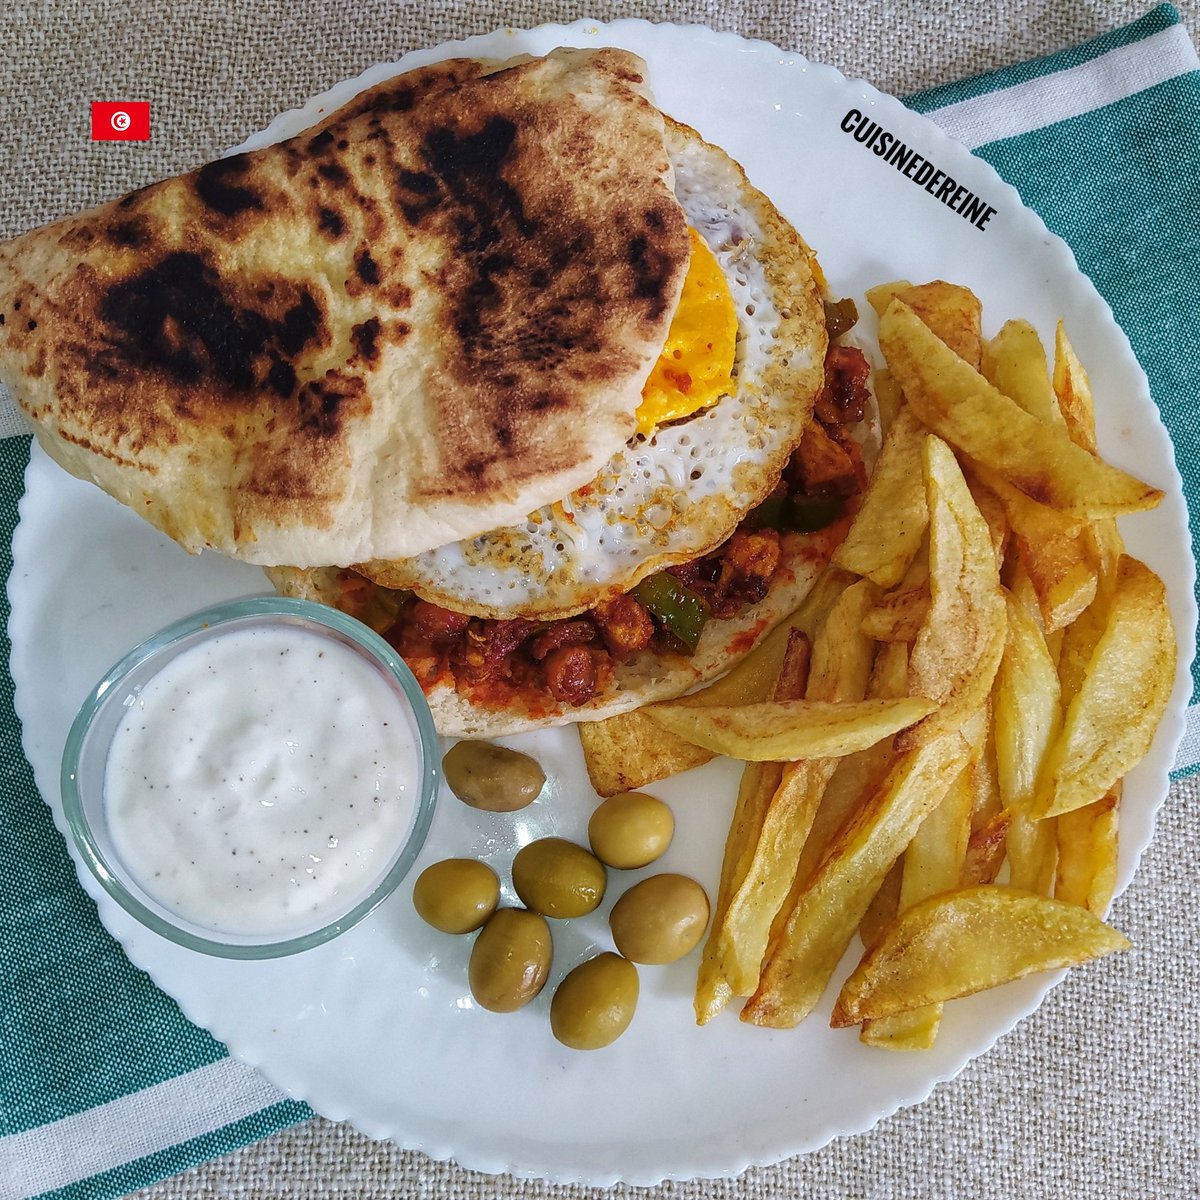 كسكروت بخبز الشباتي بالدجاج و العظم 🇹🇳 طريقة التحضير بالفيديو: youtu.be/MDMem24xVd8?si… #Food #Sandwich #Tunisia